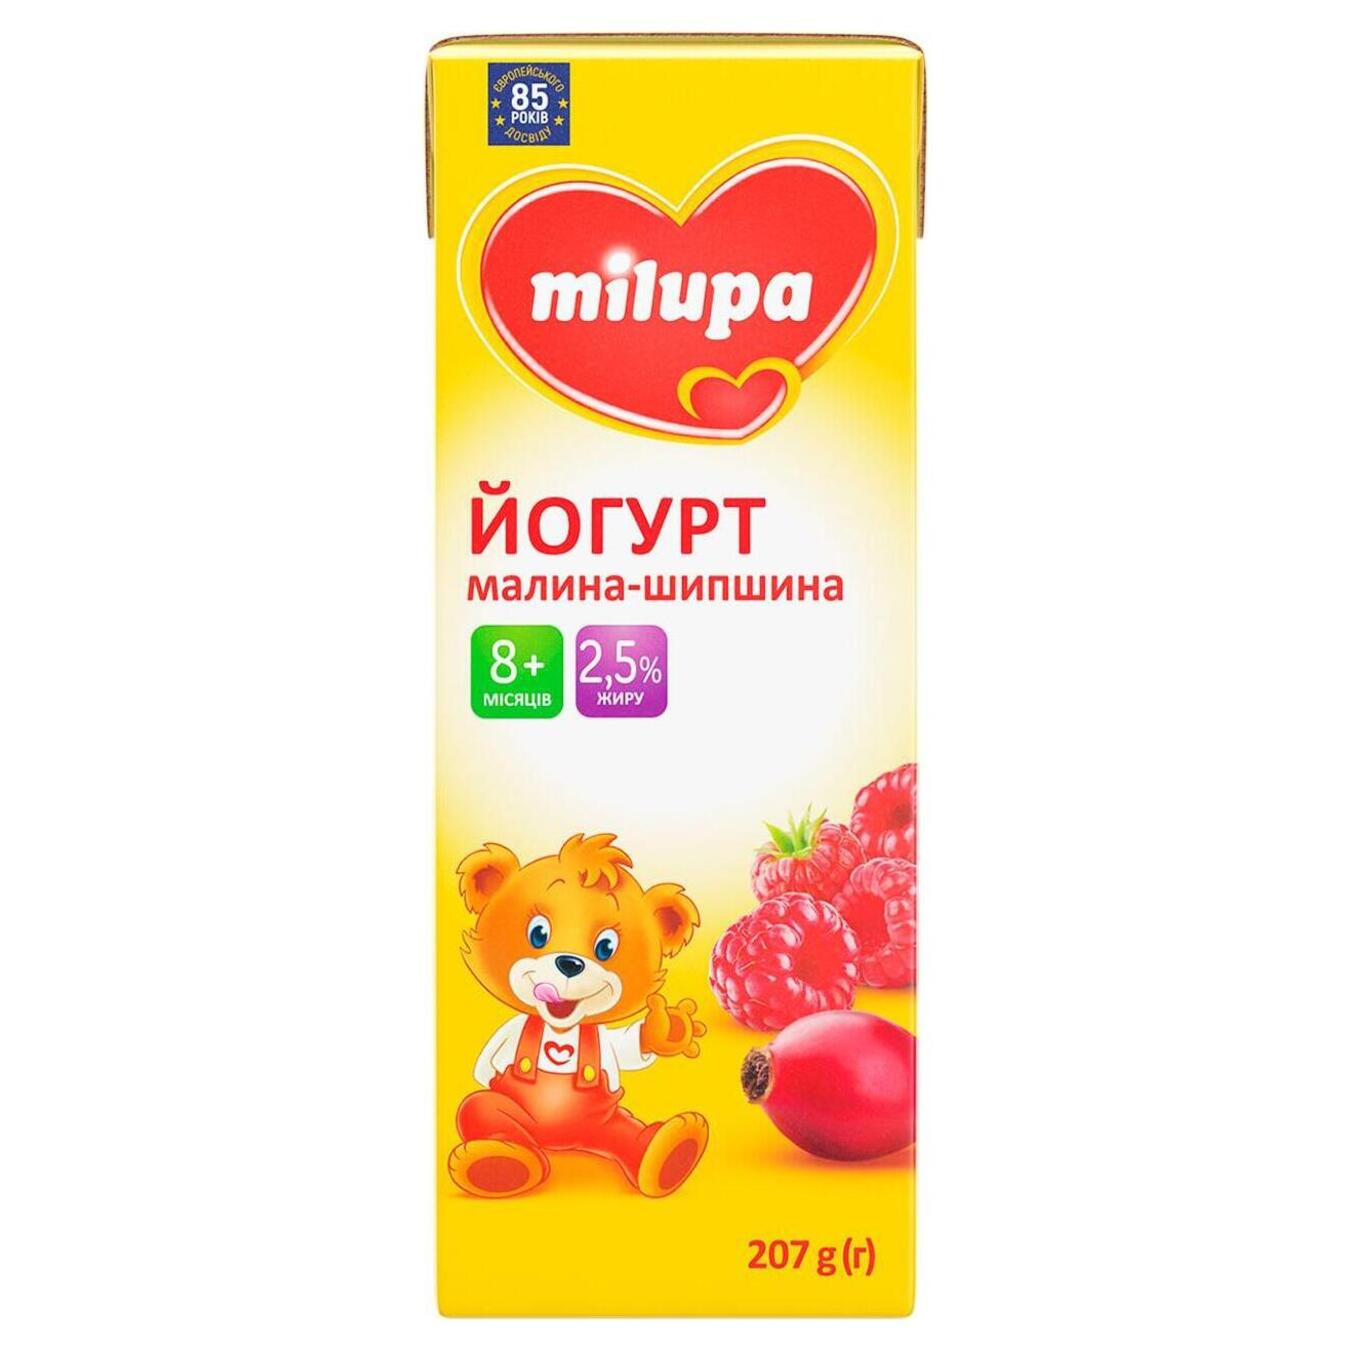 Йогурт з біфідобактеріями Мілупа 2,5% малина ТБА 207г